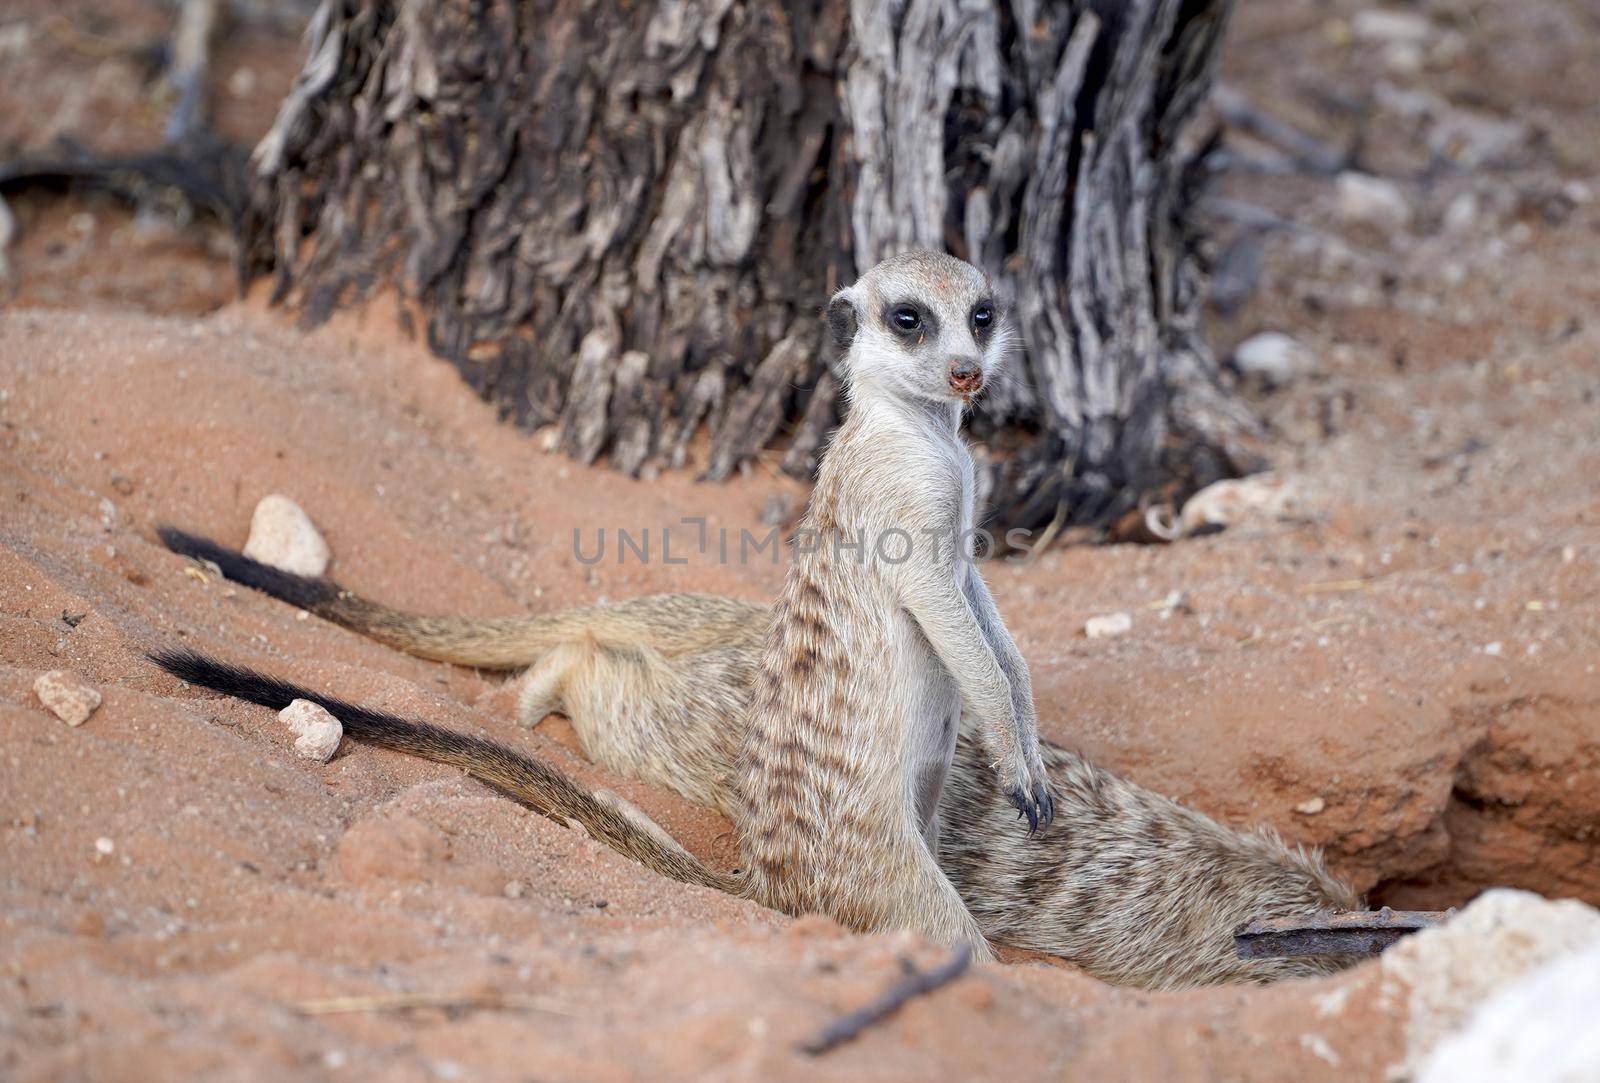 Cute Meerkat in South African park in Kalahari desert by fivepointsix